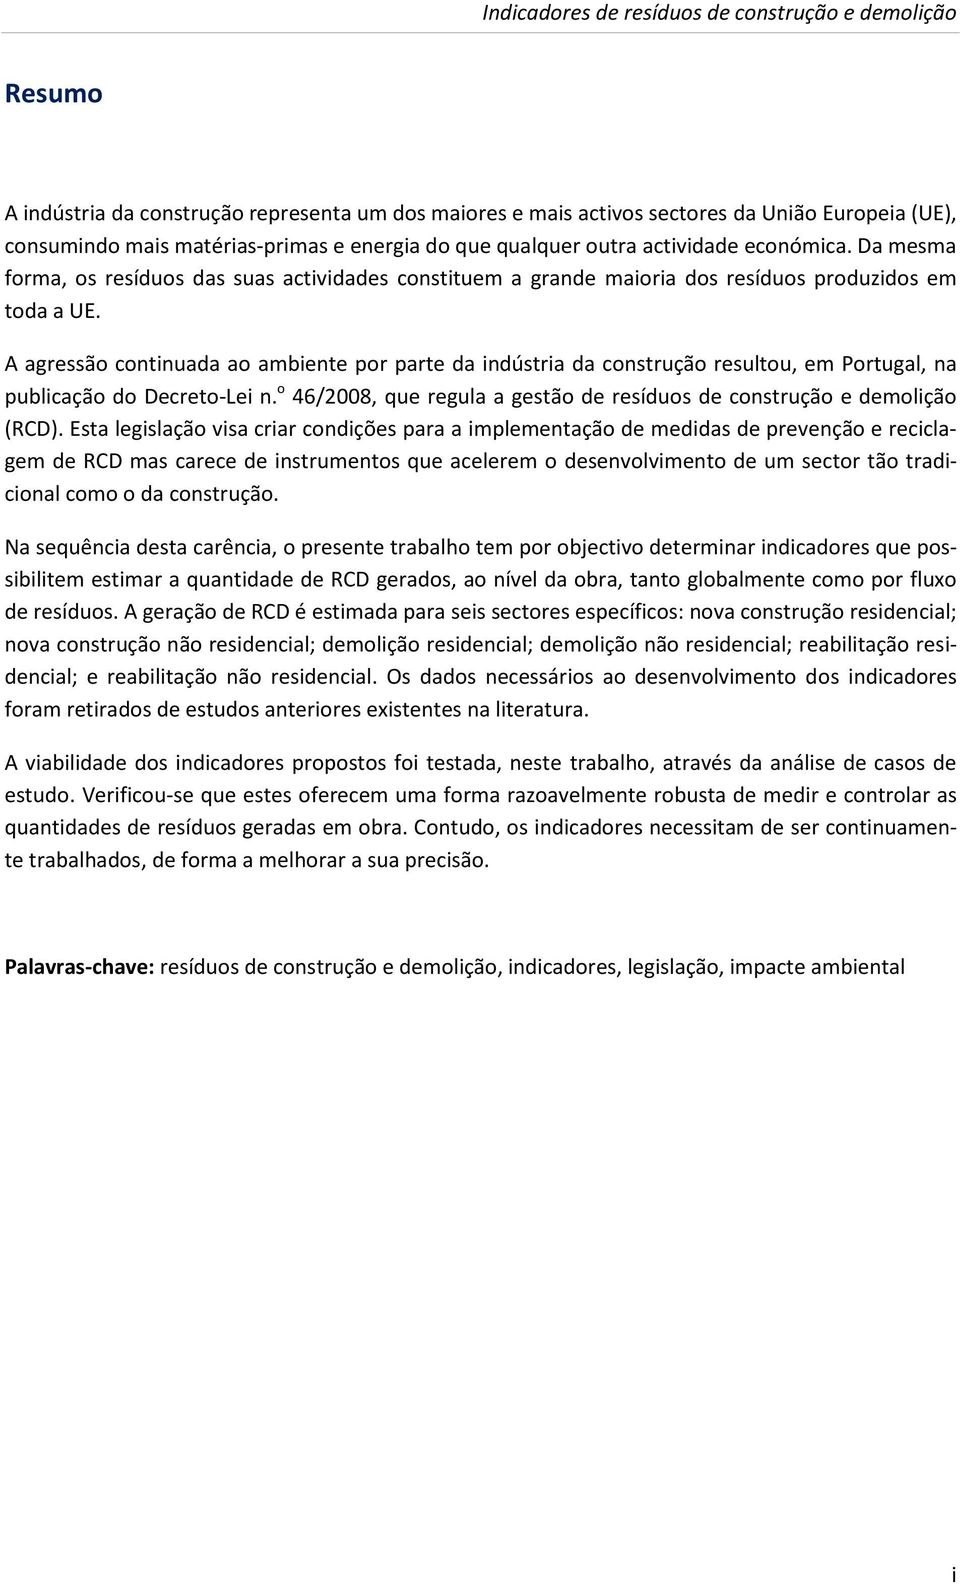 A agressão continuada ao ambiente por parte da indústria da construção resultou, em Portugal, na publicação do Decreto-Lei n.